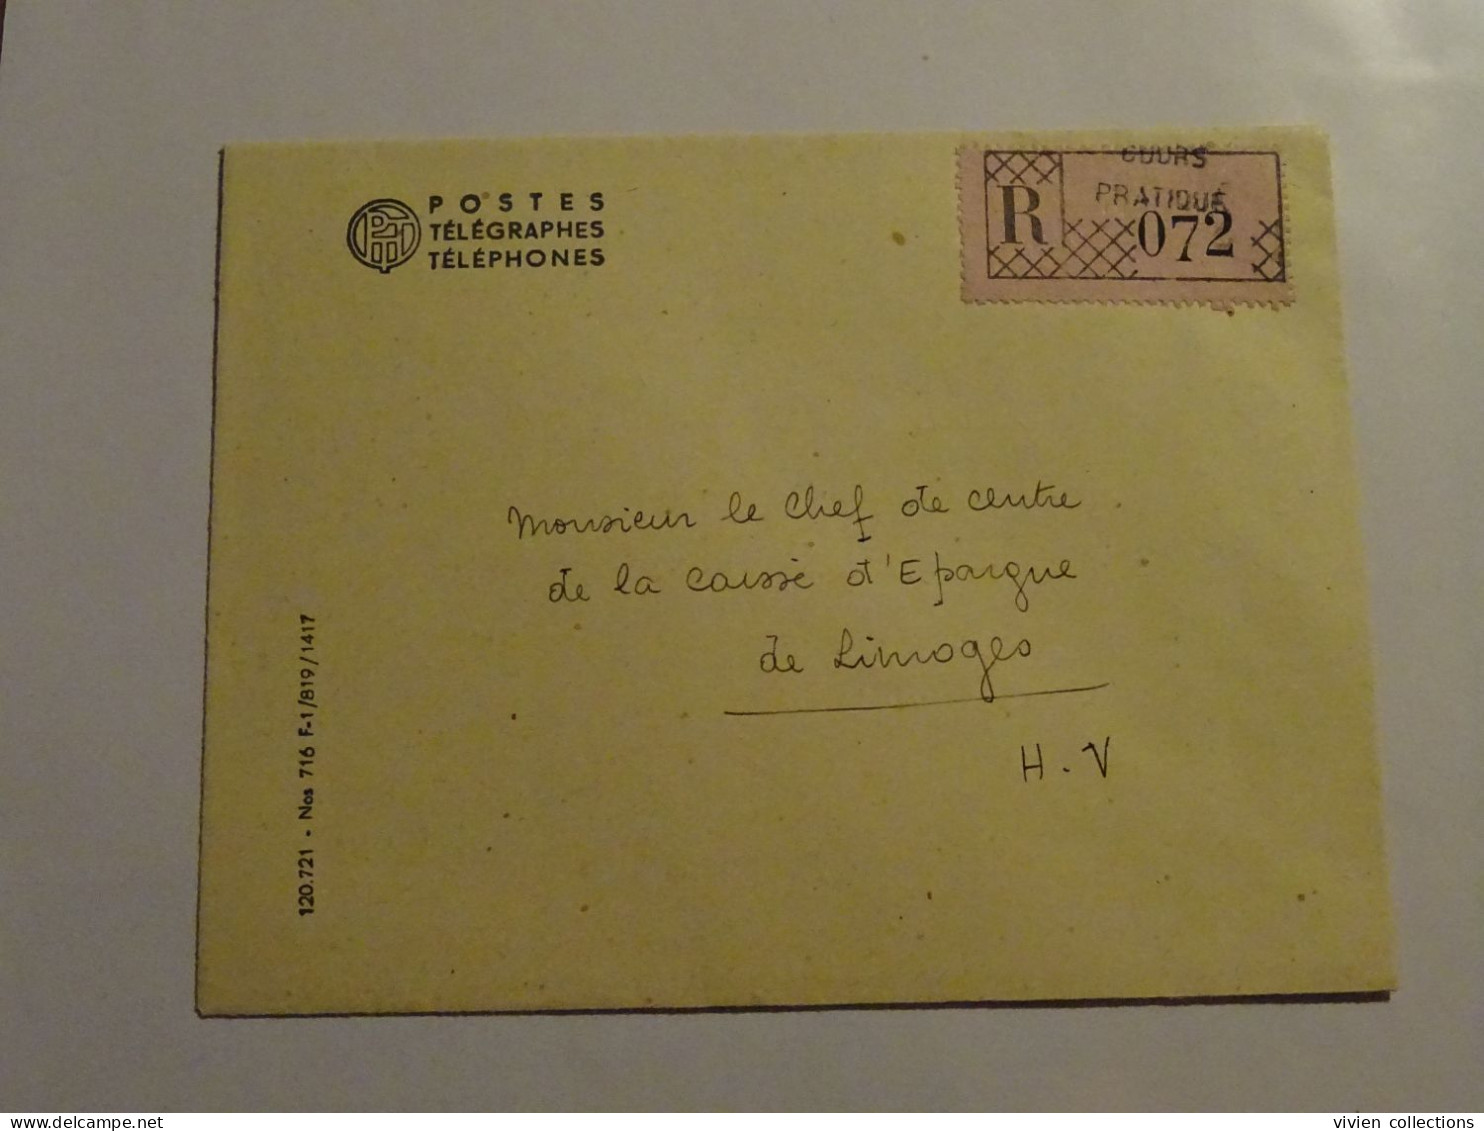 France cours pratique d'instruction Orléans 1954 télégramme remboursement a vue partiel CNE M. Renard Menuisier à Tulle